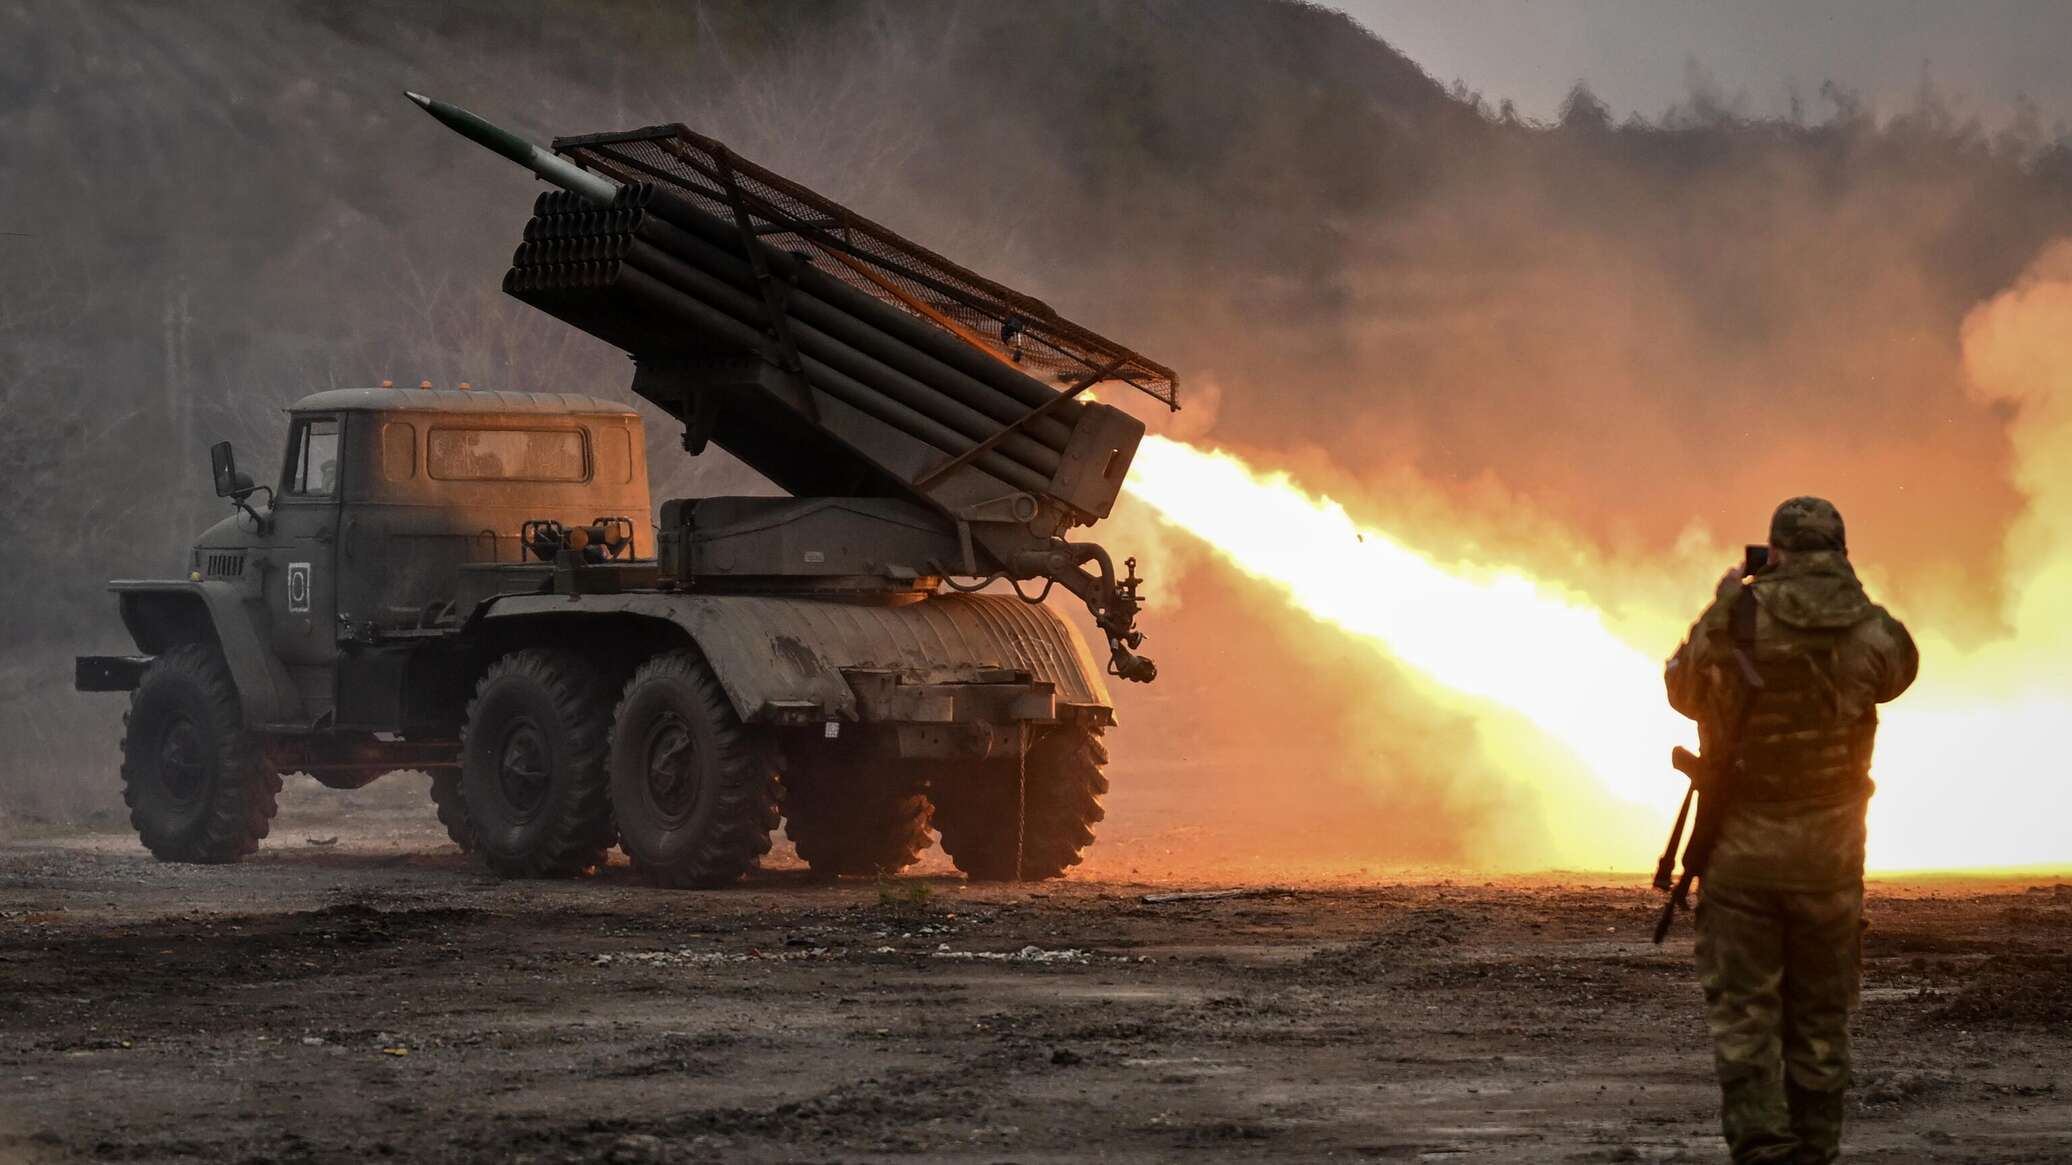 الدفاع الروسية تعلن تدمير عشرات الطائرات المسيرة والصواريخ الموجهة